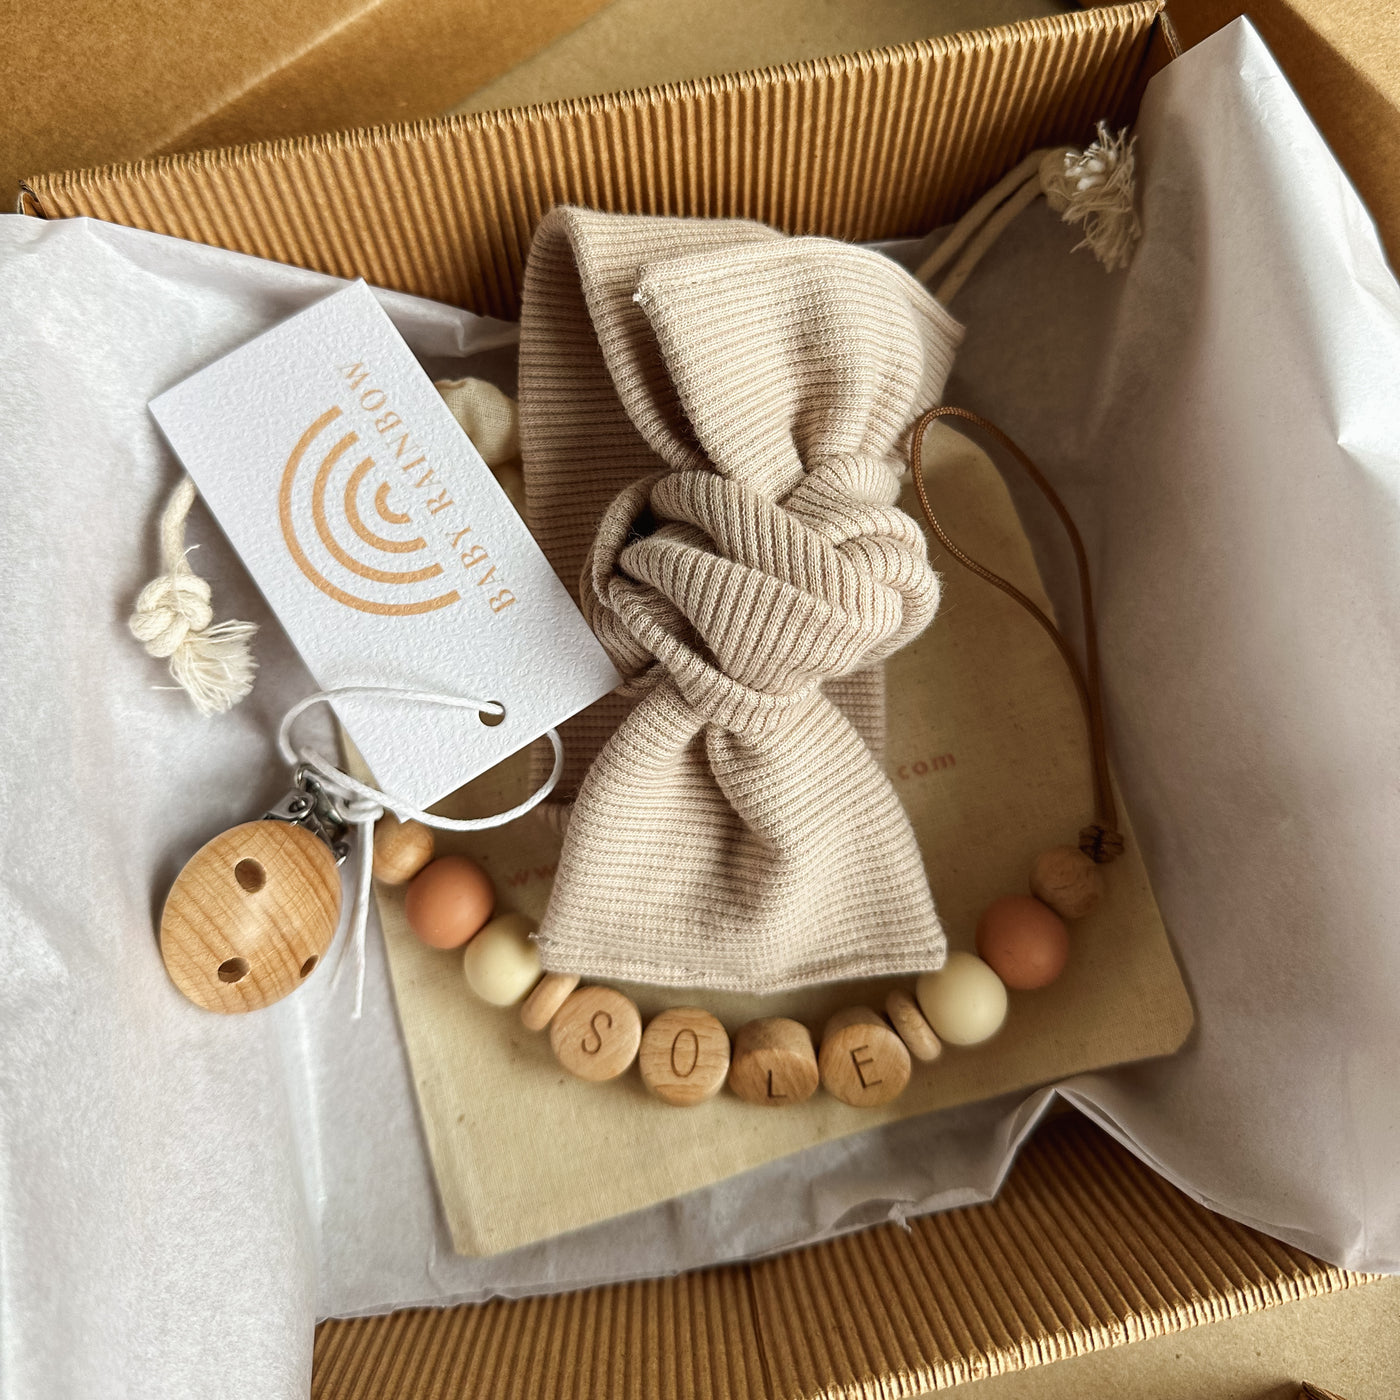 Baby Gift Box - Fiocco Portaciuccio Personalizzato - Baby Gift Box - Baby Rainbow Shop - P.IVA 04847500230